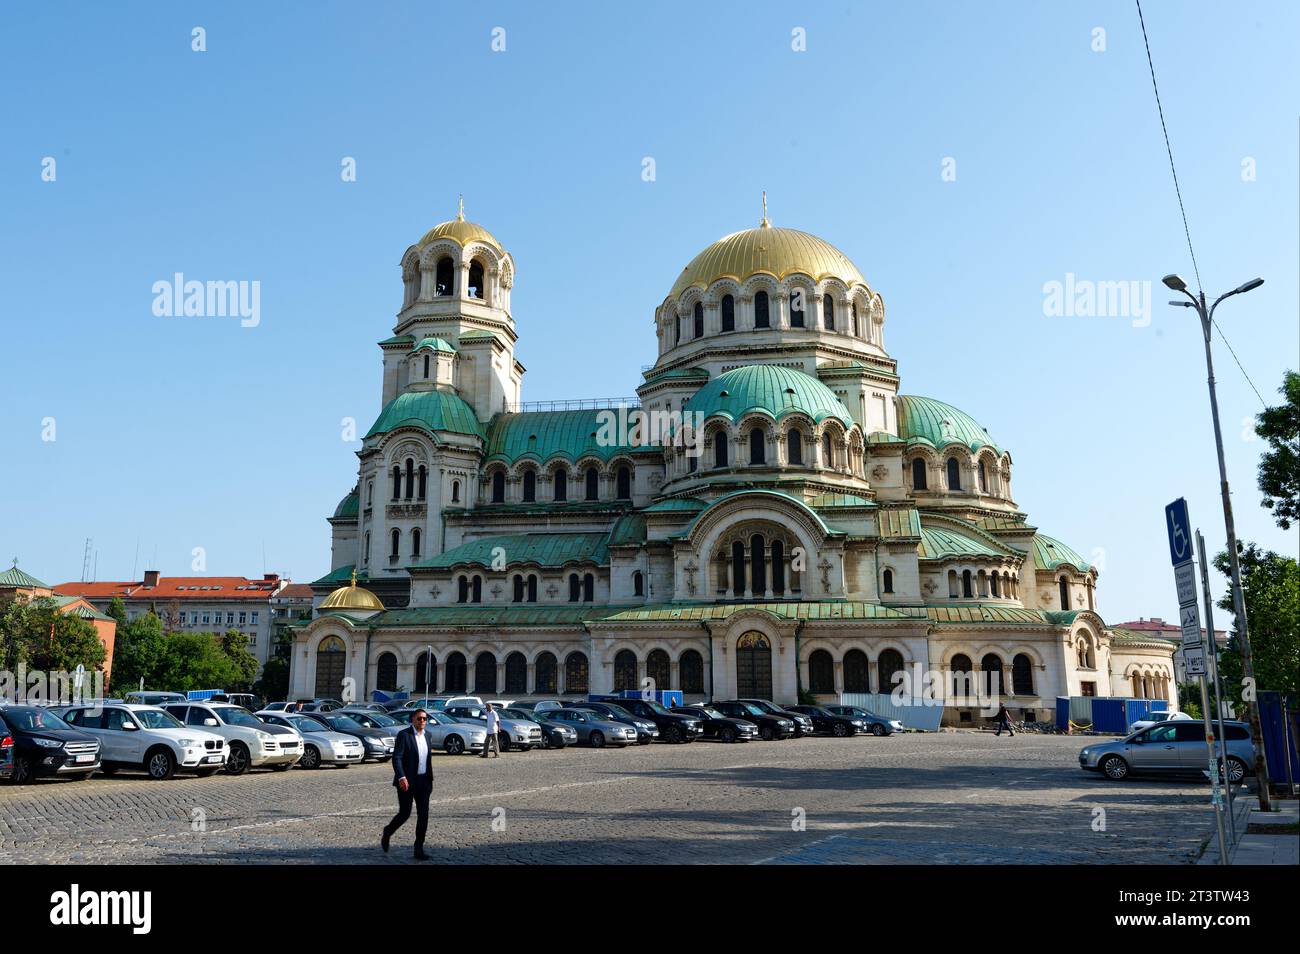 Chiesa di Sant'alessandro nevskij una cattedrale ortodossa bulgara, una vista maestosa tra le vaste aree di parcheggio che la circondano. Foto Stock